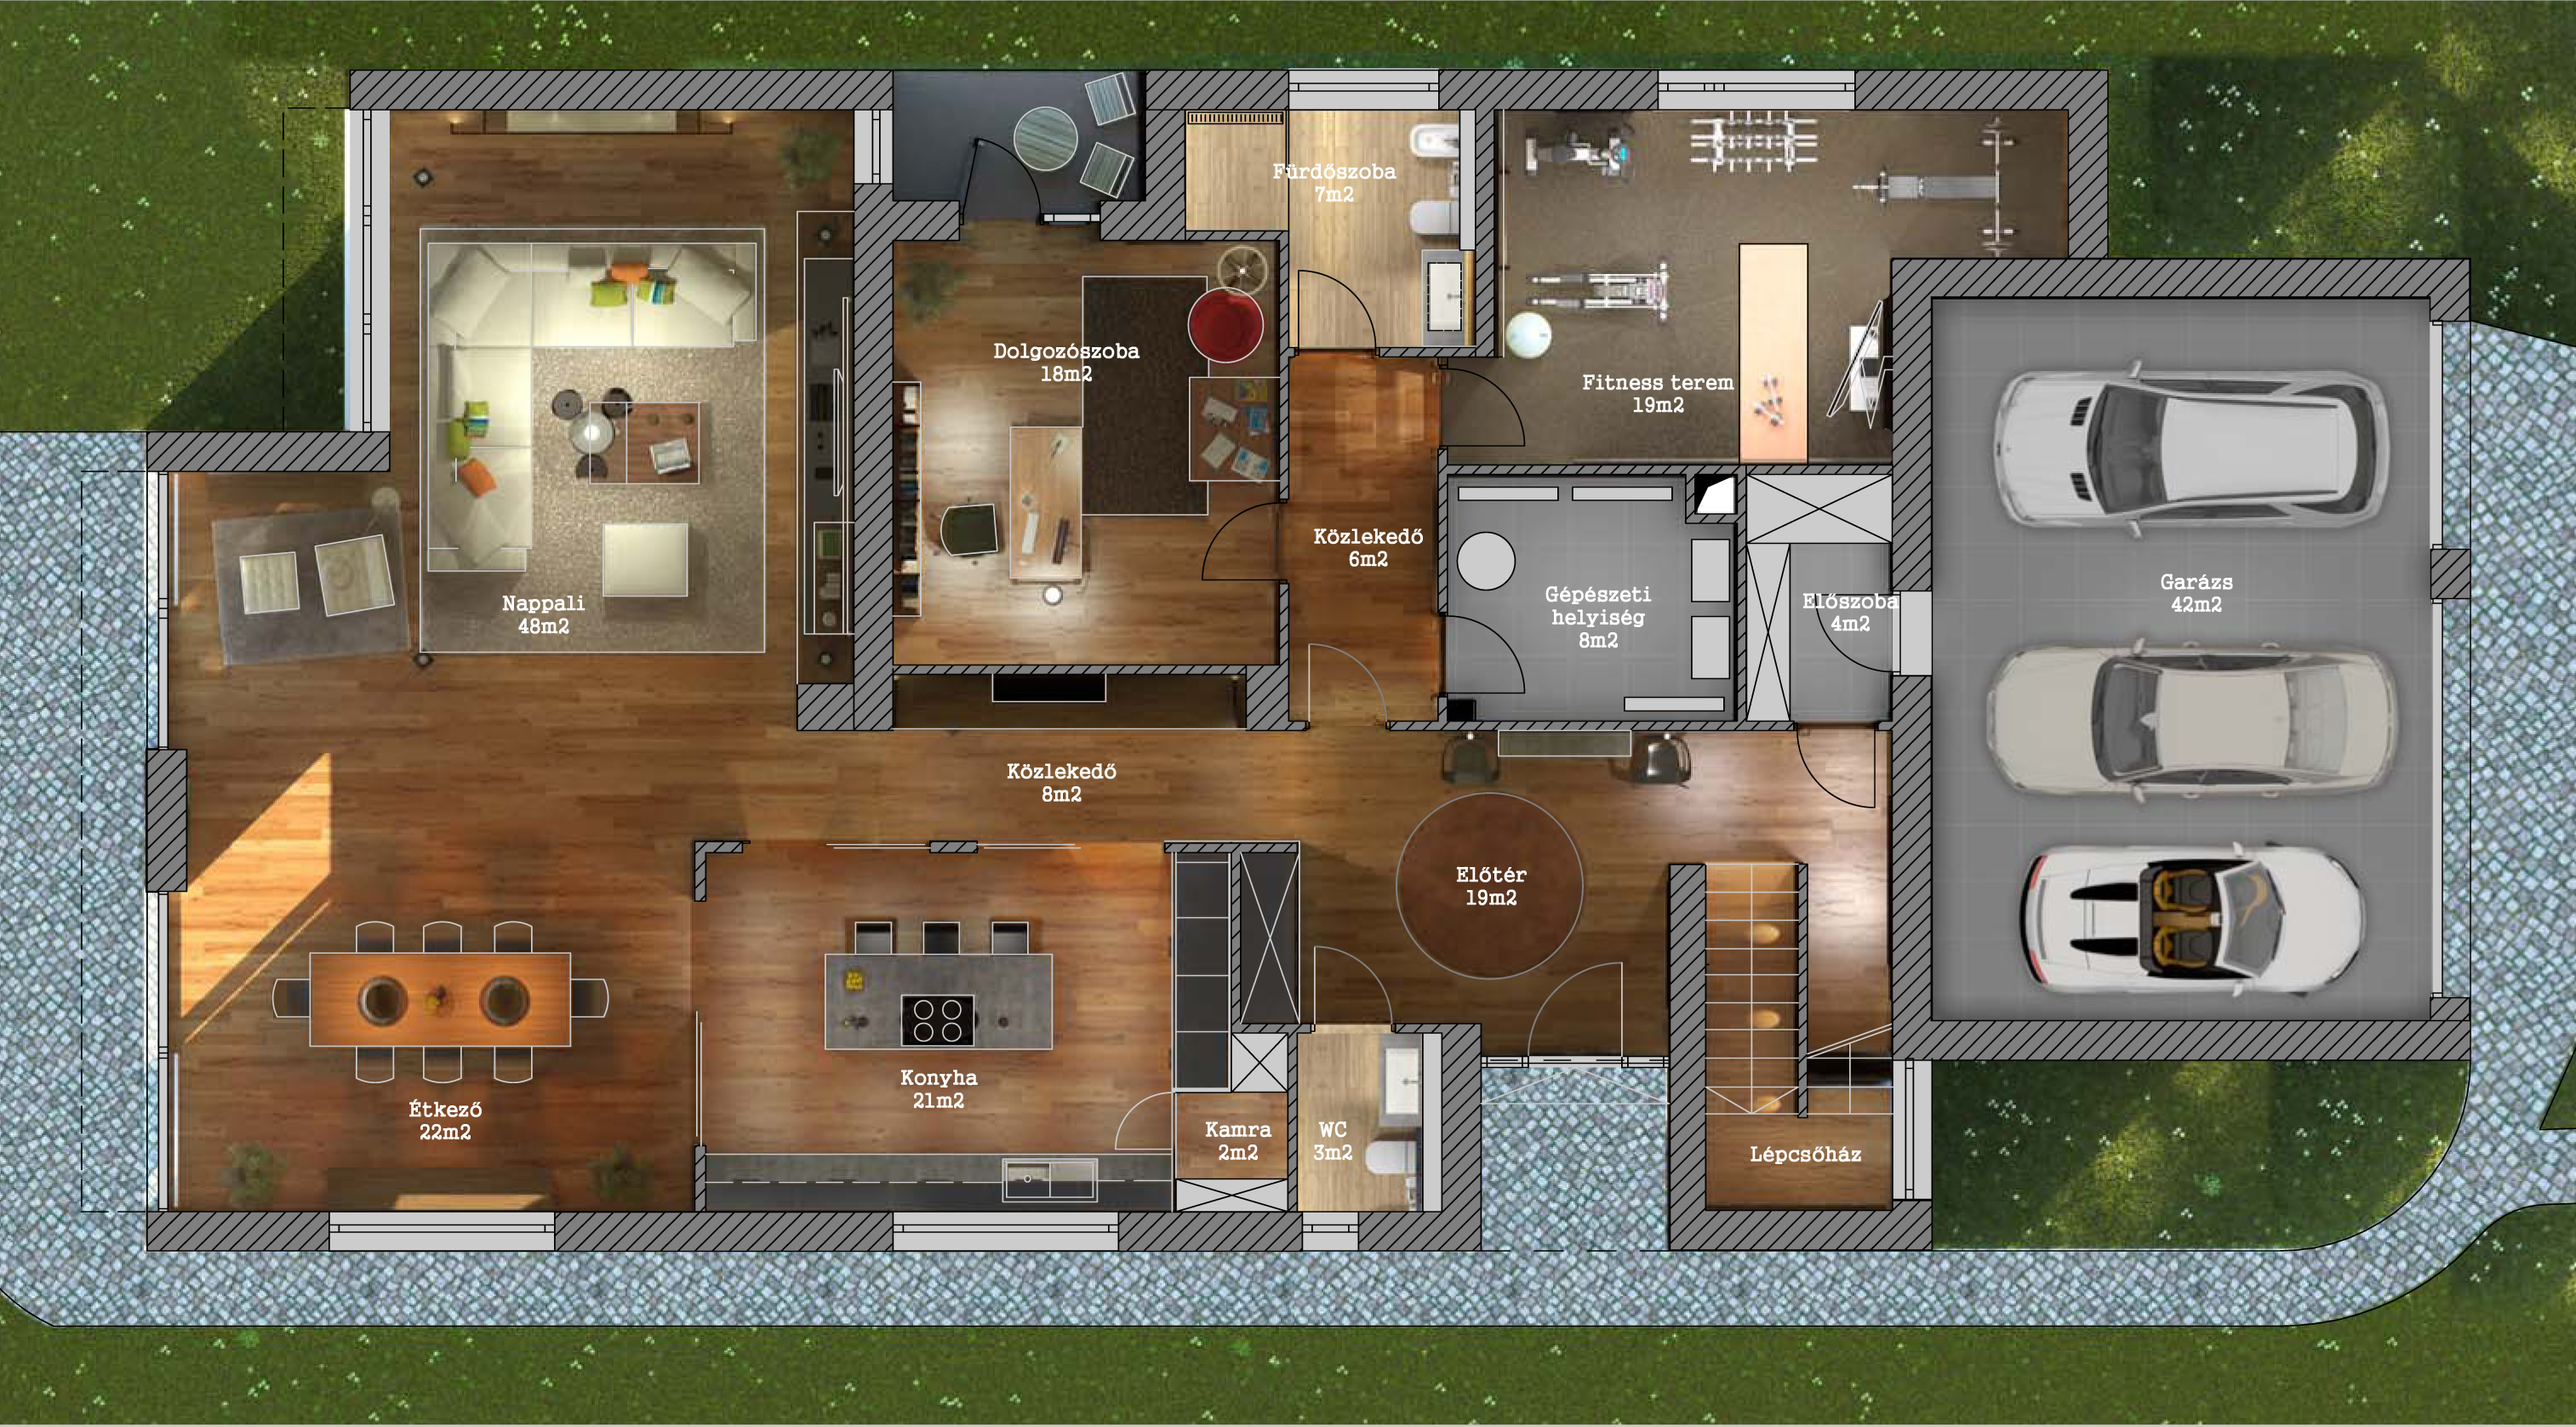 Tervezett alaprajz - földszint / Ground floor layout